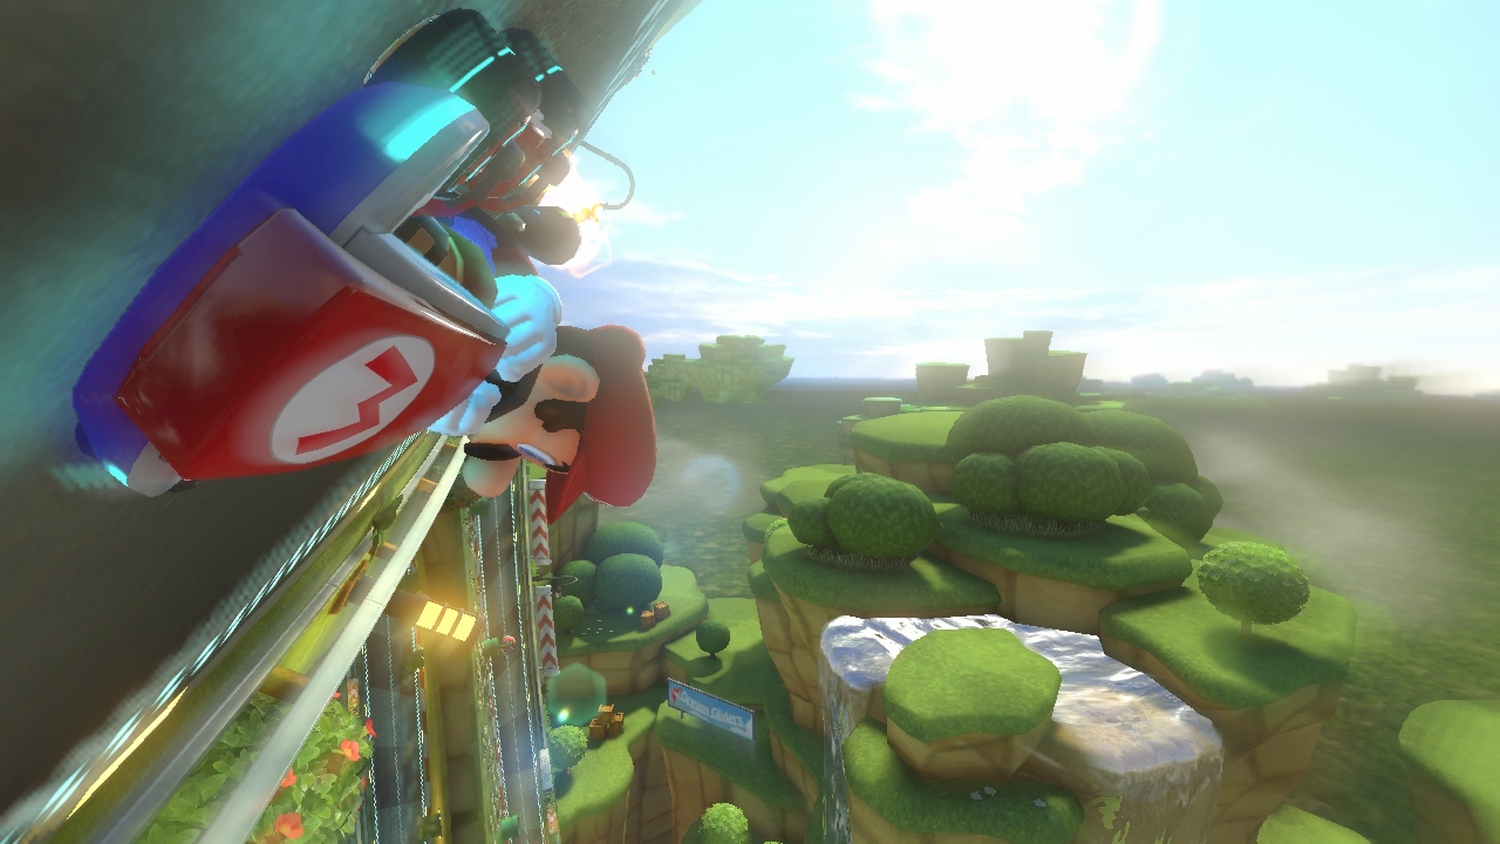 Mario Kart 8 - WiiU